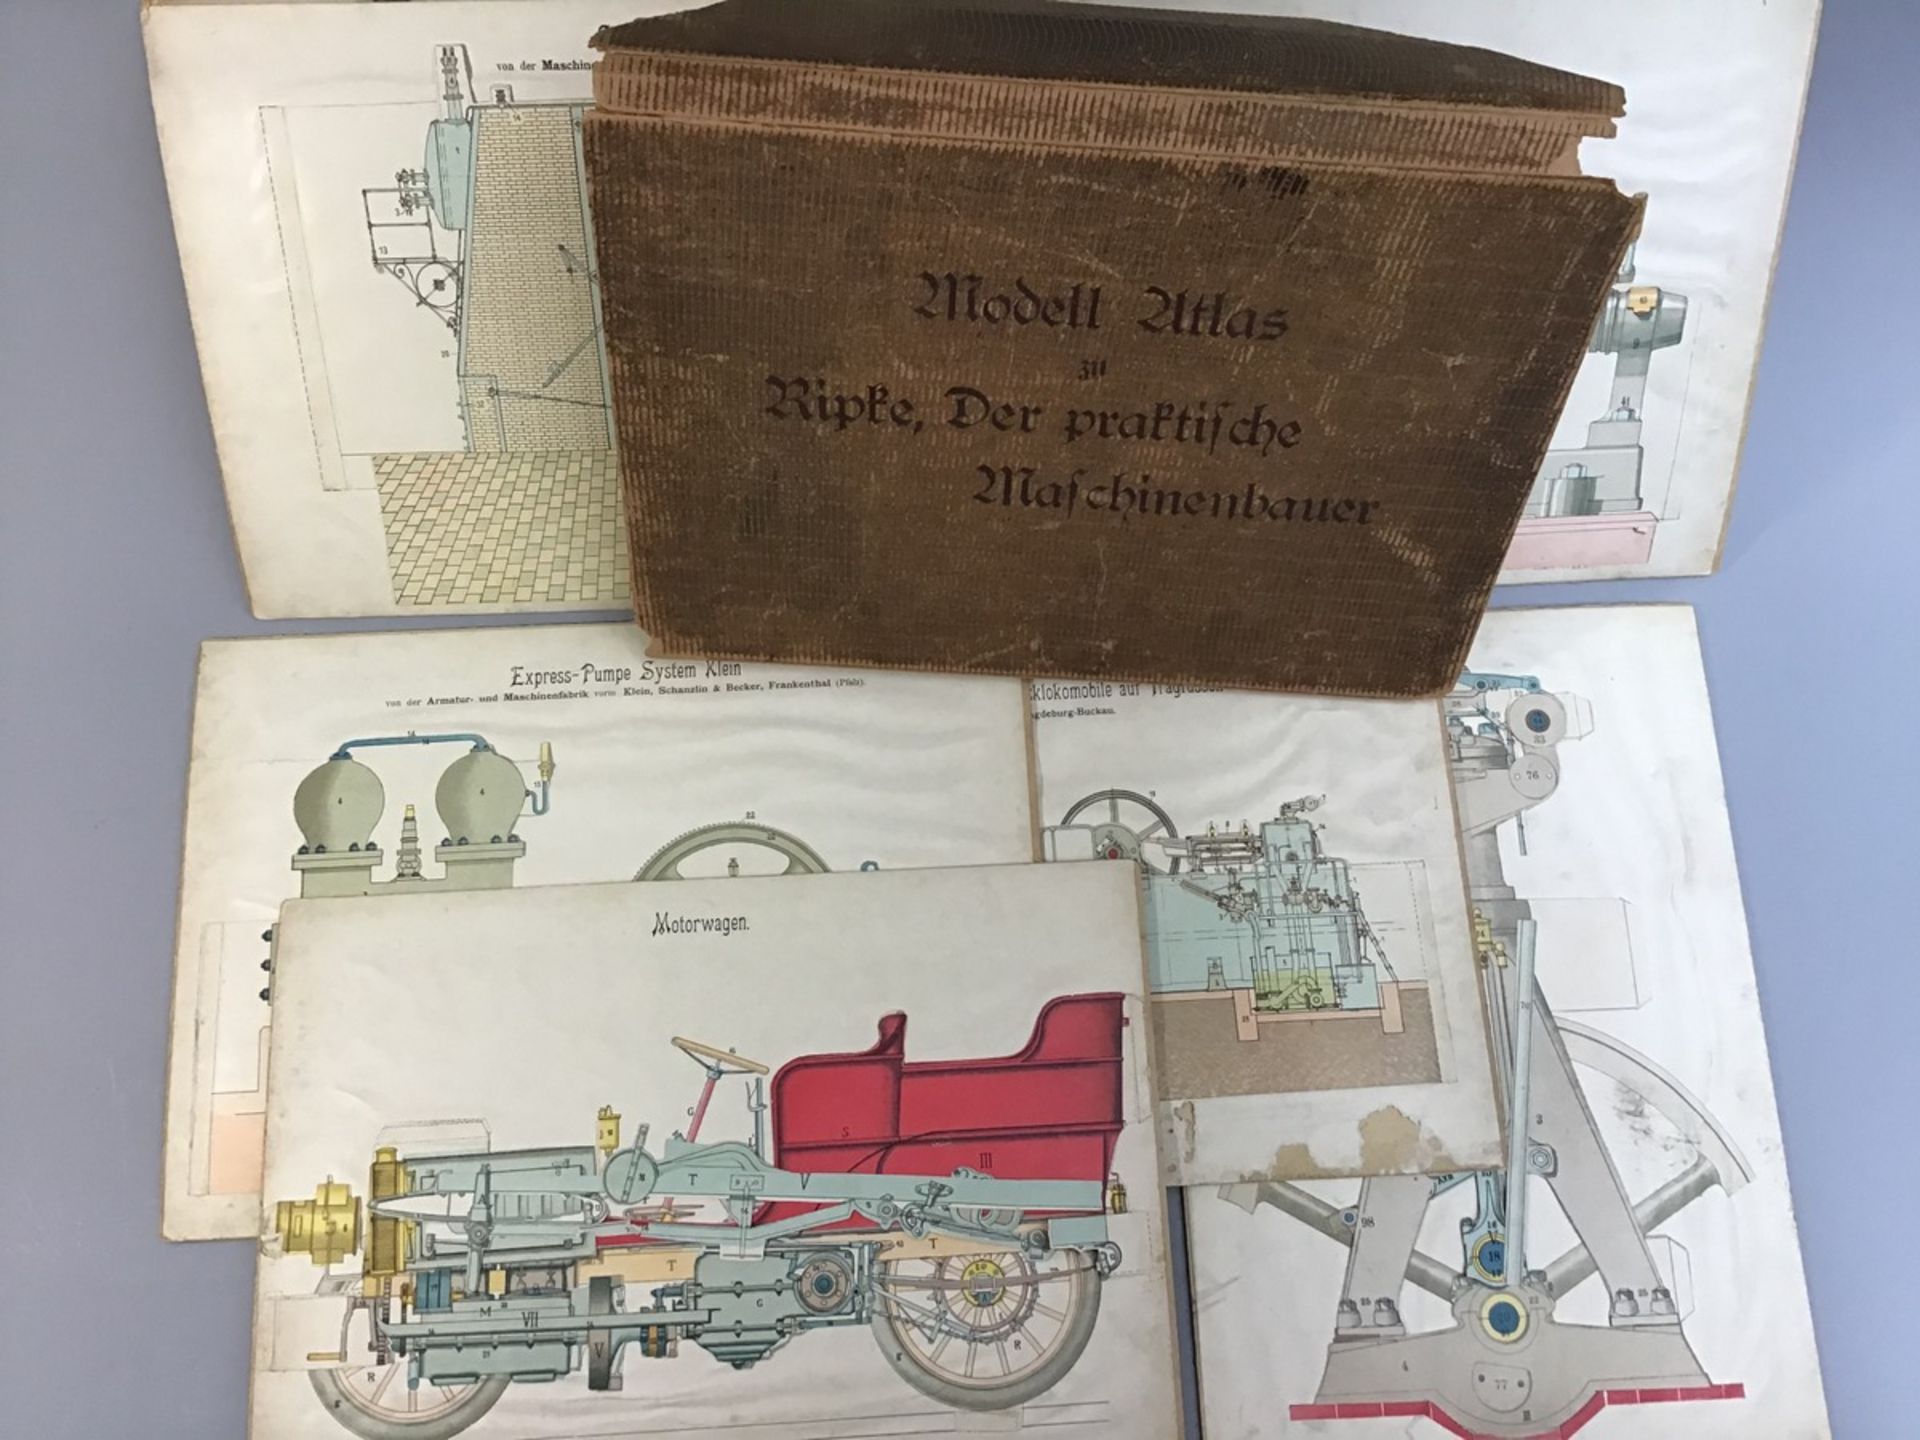 Modell-Atlas " Der praktische Maschinenbauer" v. Ripke, um 1900, 6 Tafeln techn. Zeichn. Z.